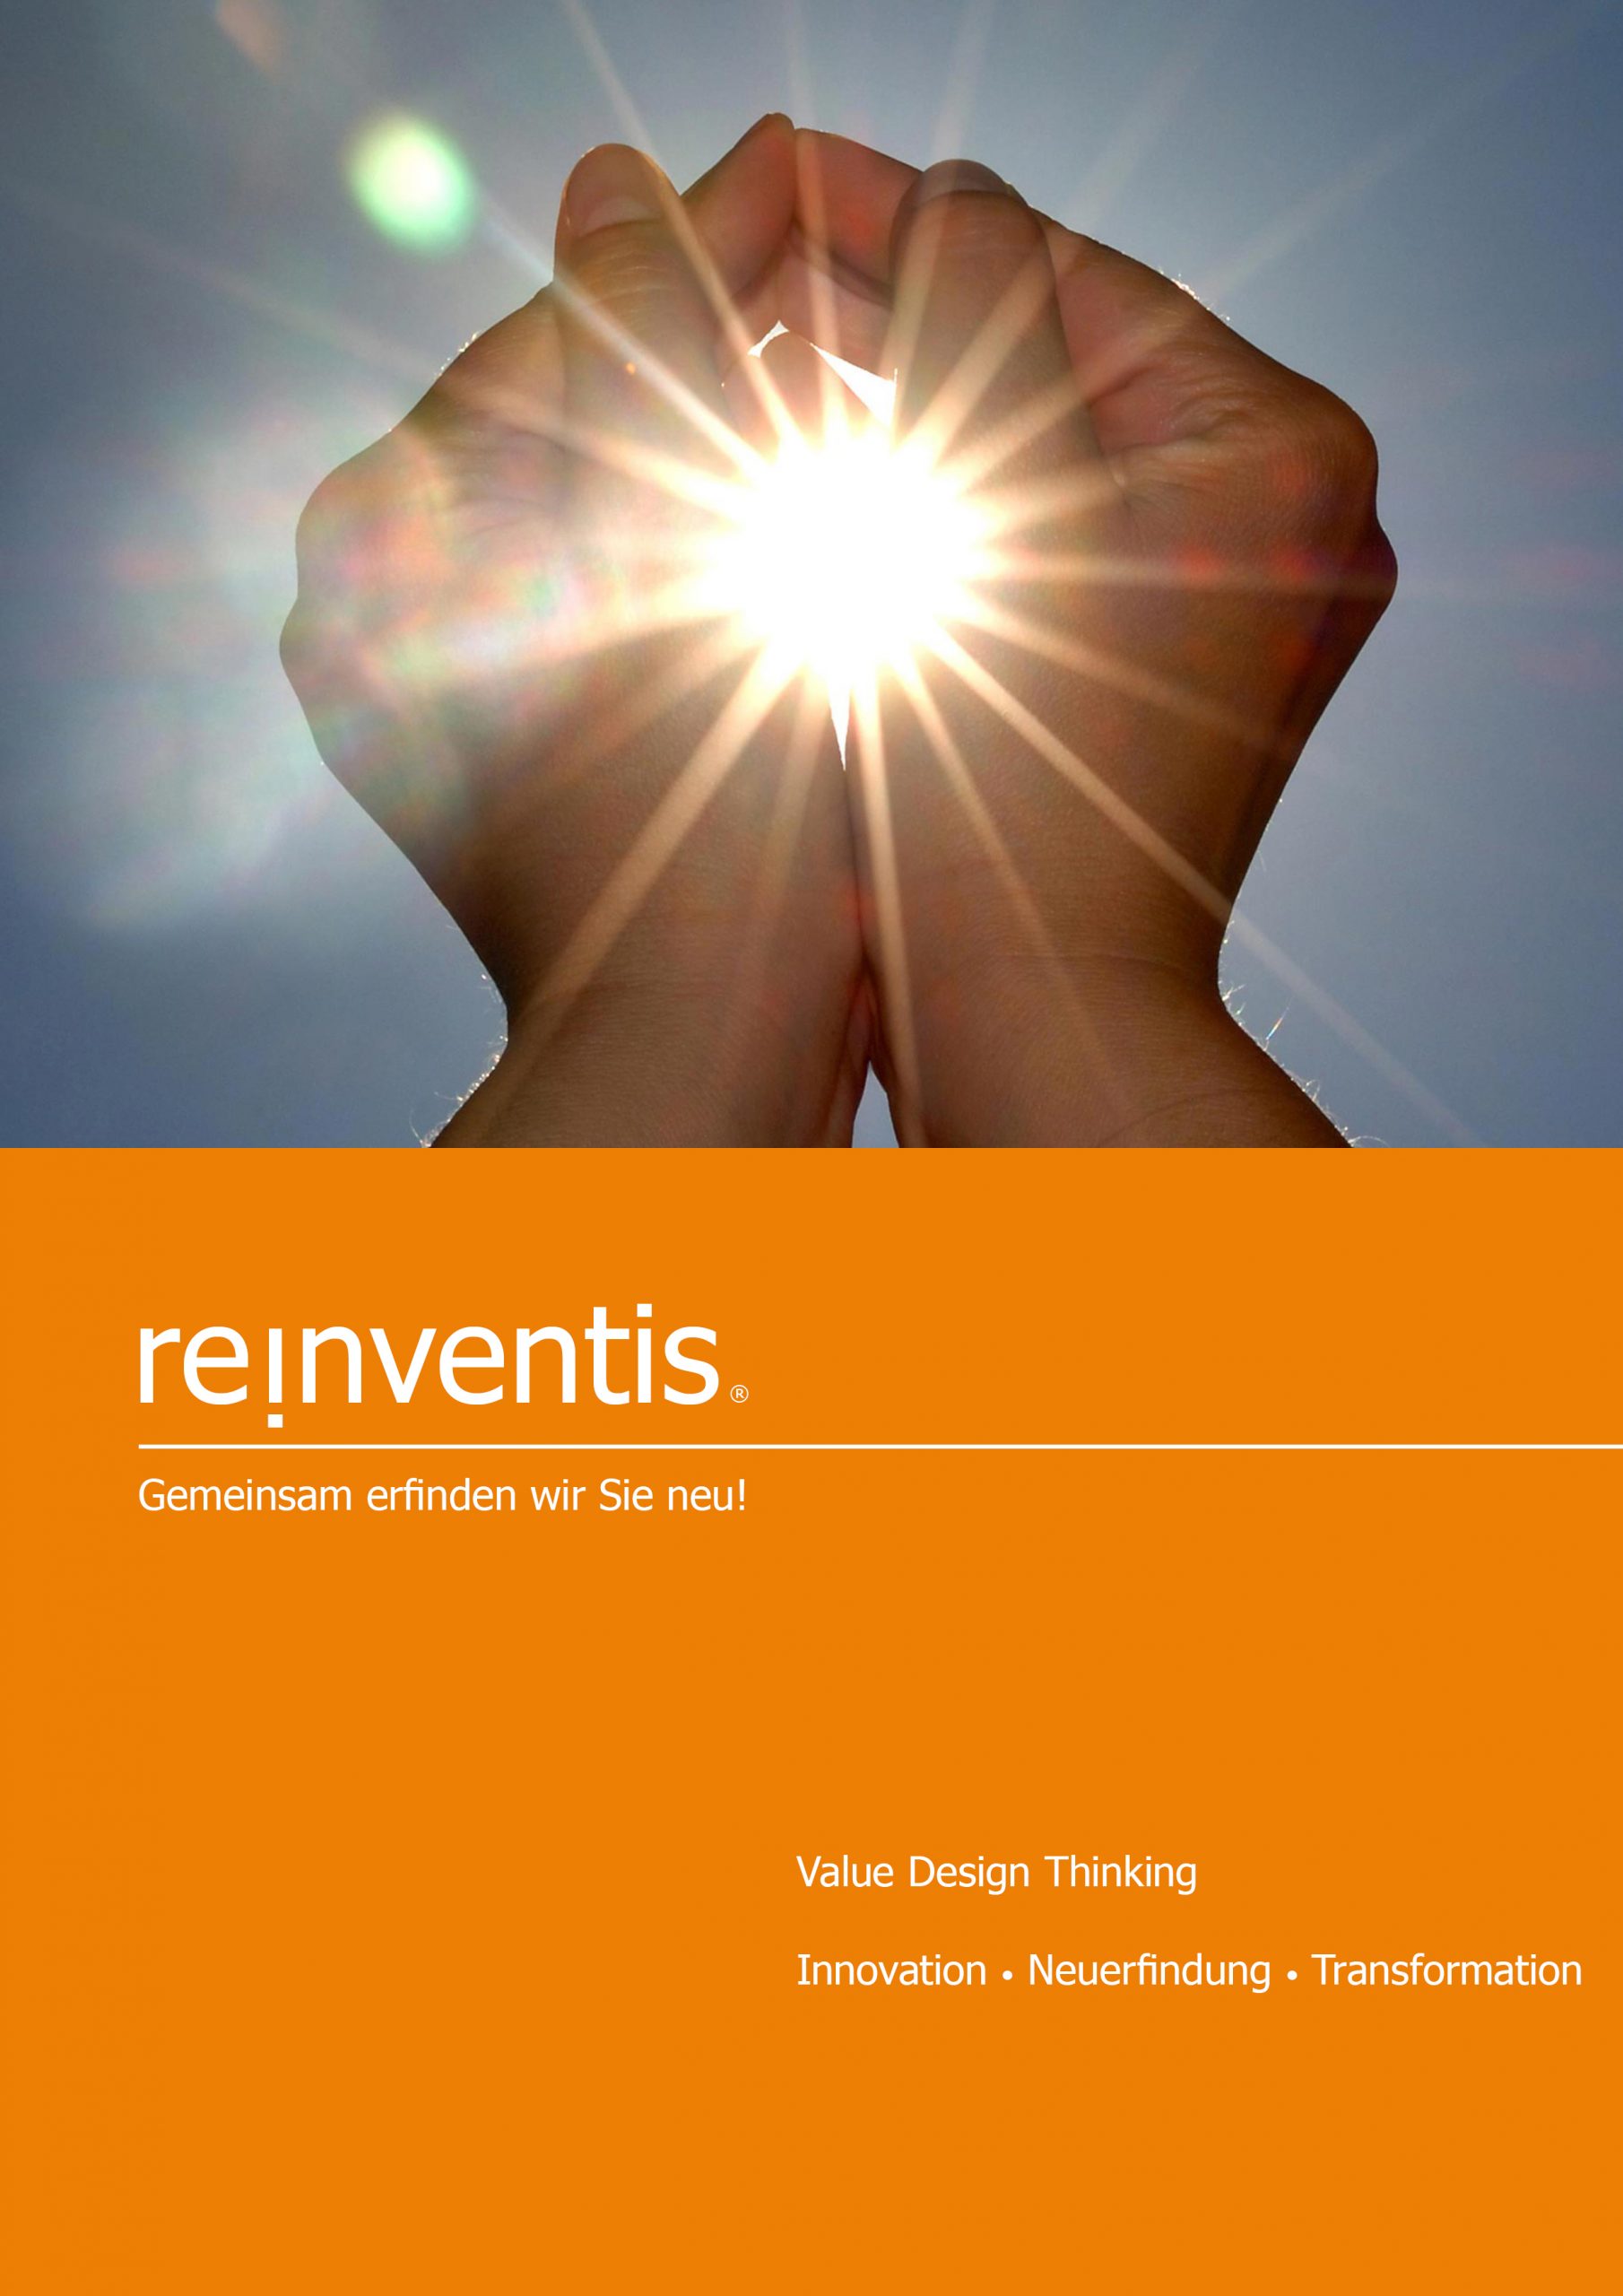 Value Design Thinking - Innovation, Reinvention und Transformation - REINVENTIS - München